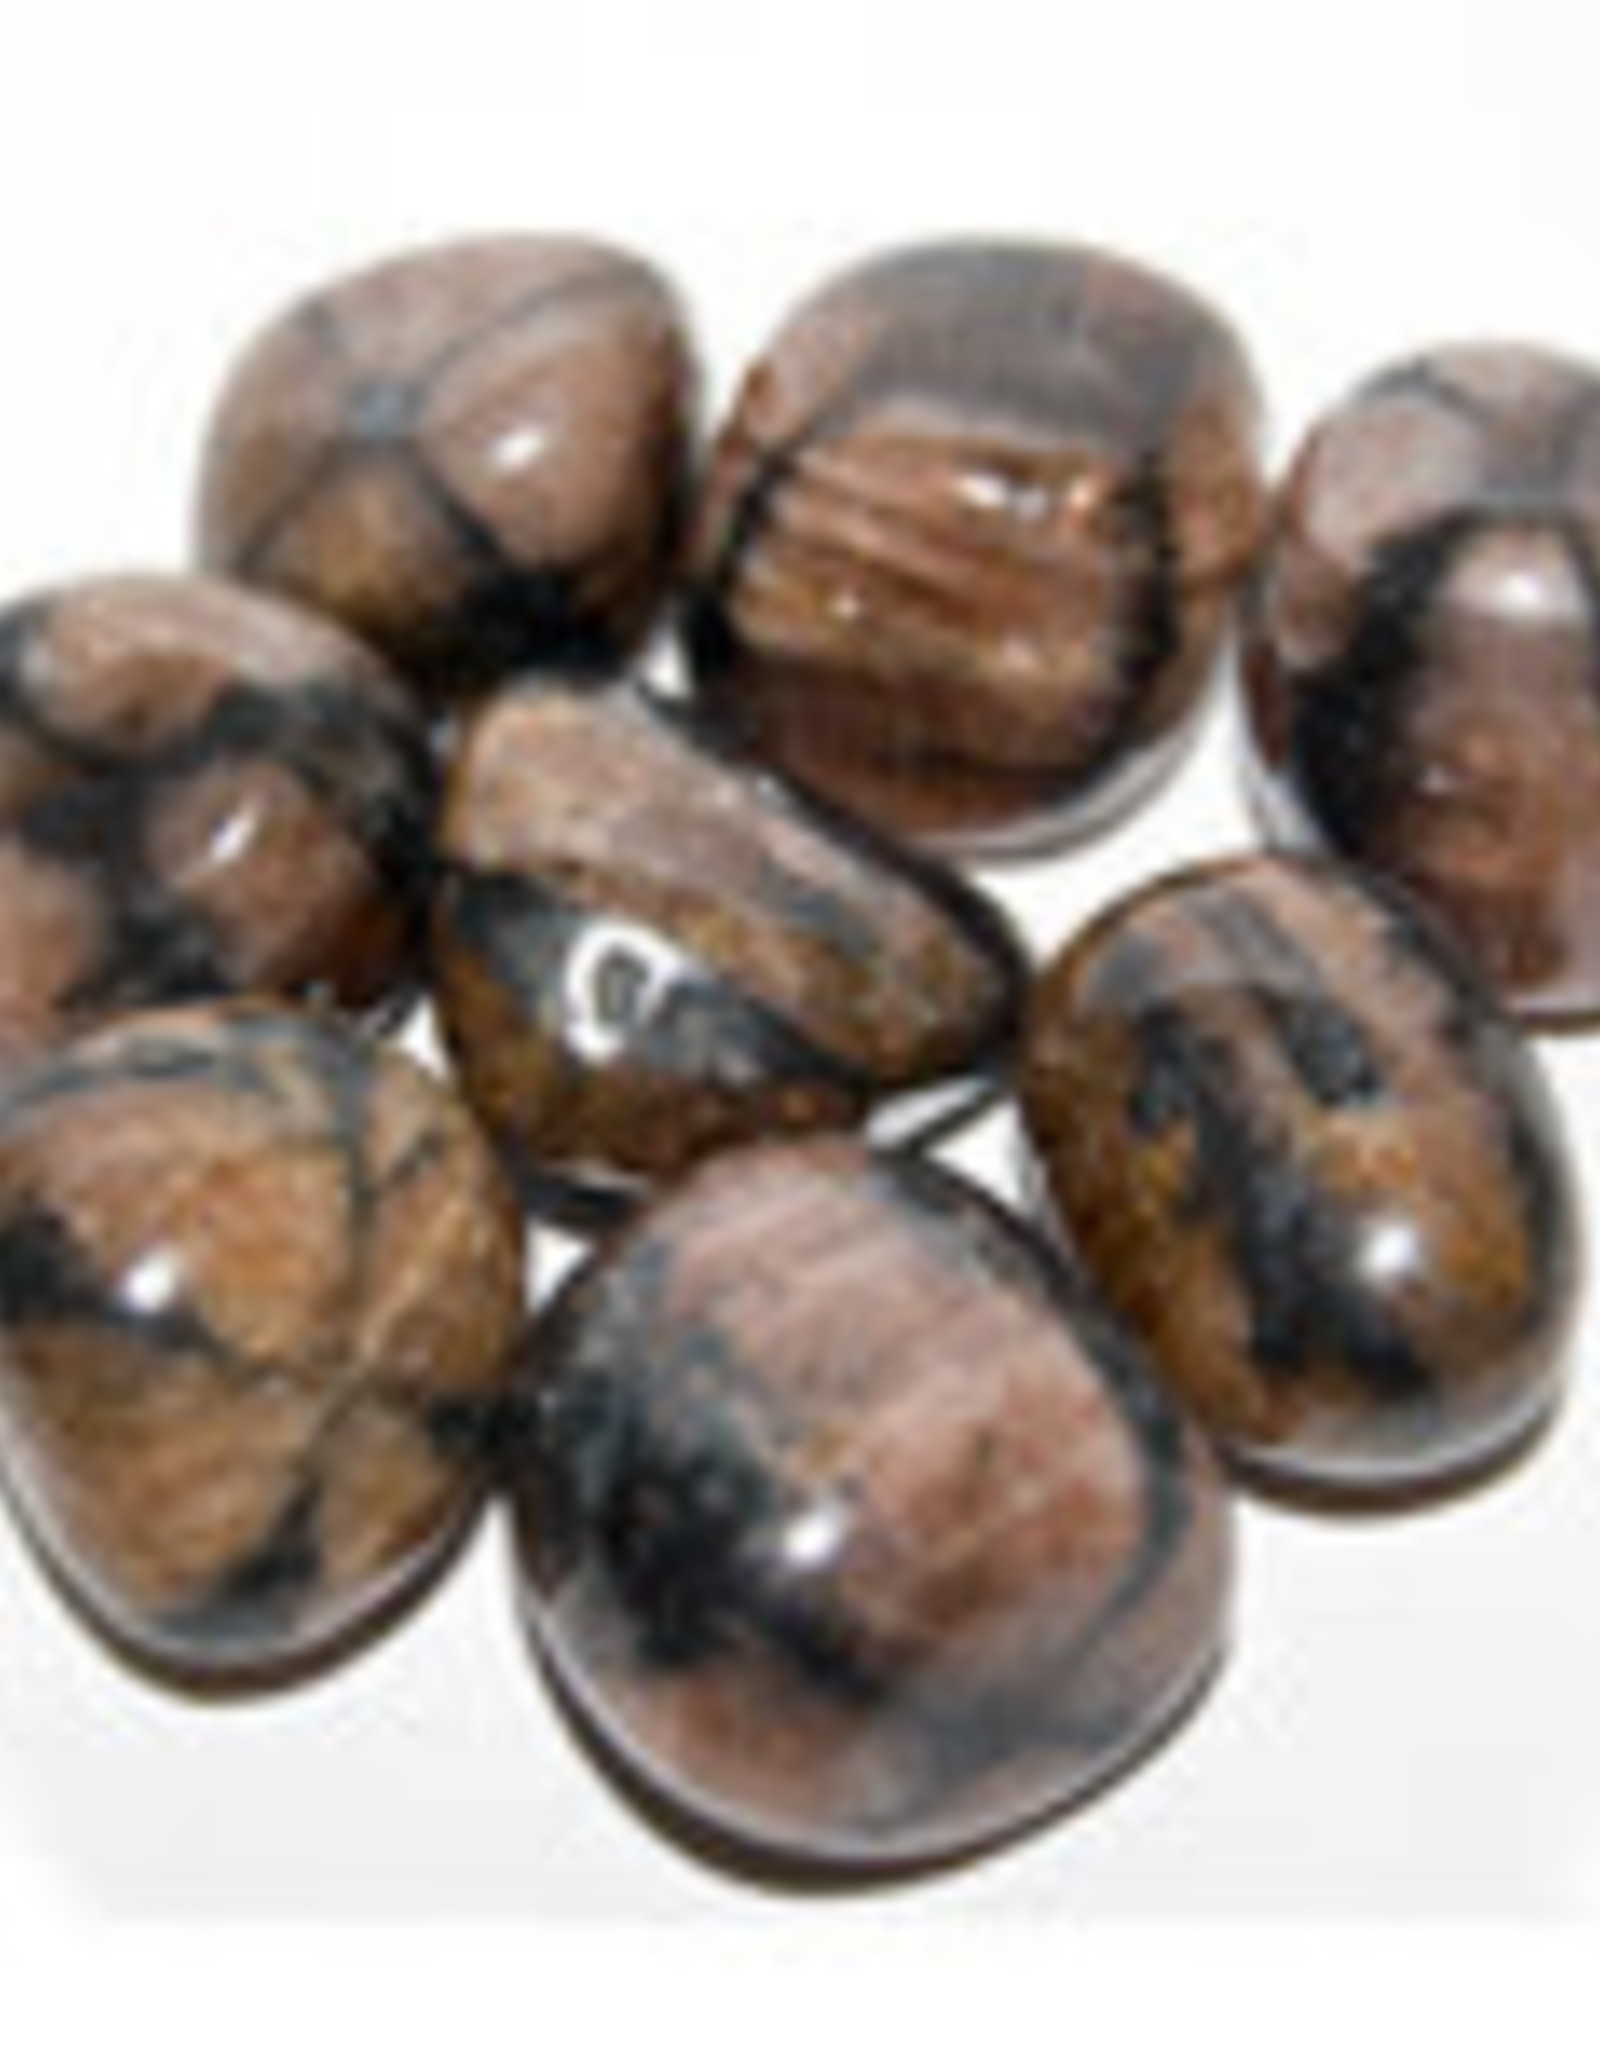 Tumbled Stone - Chiastolite